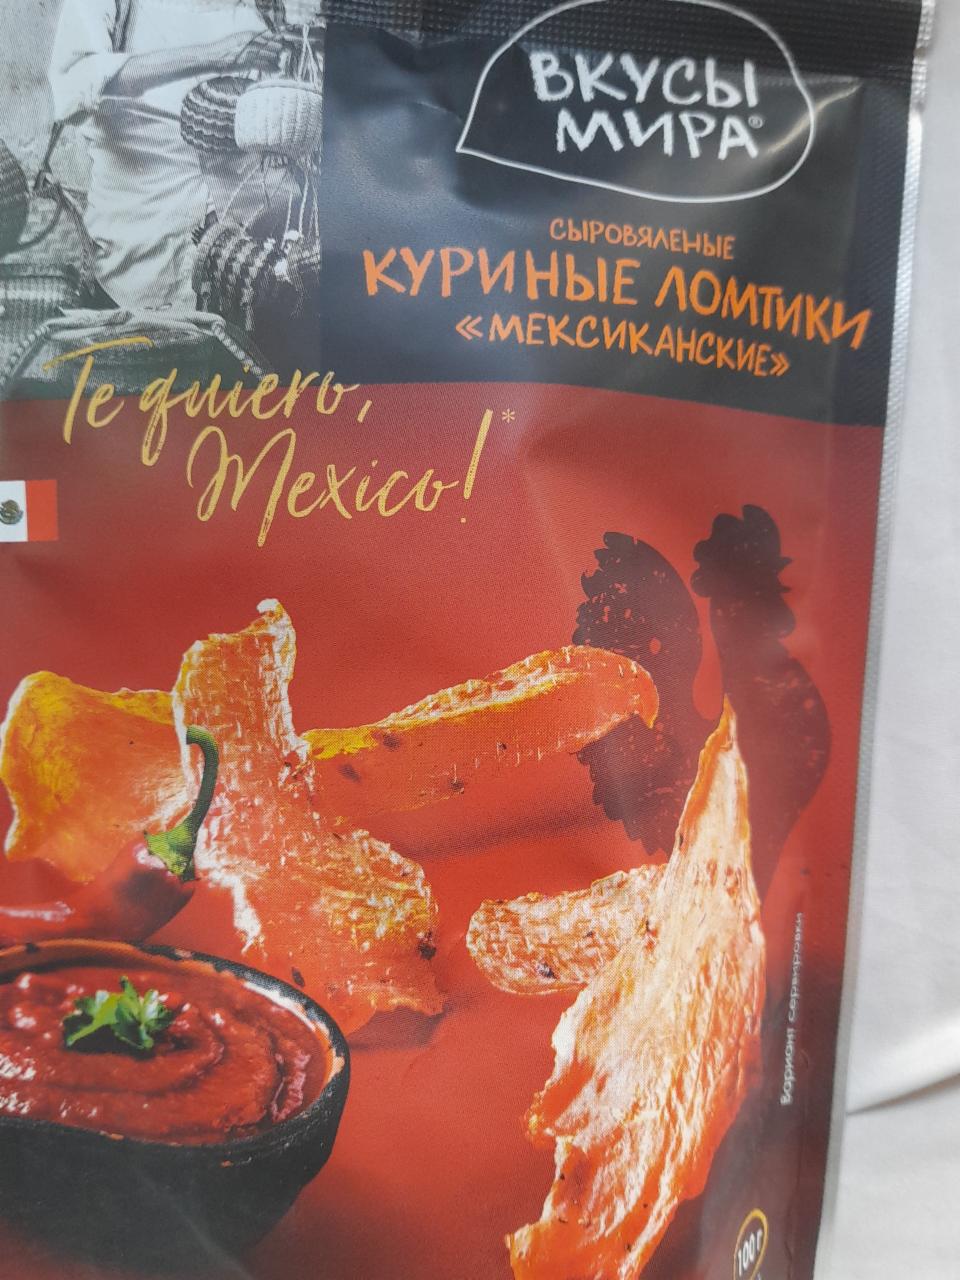 Фото - Куриные ломтики мексиканские Вкусы мира